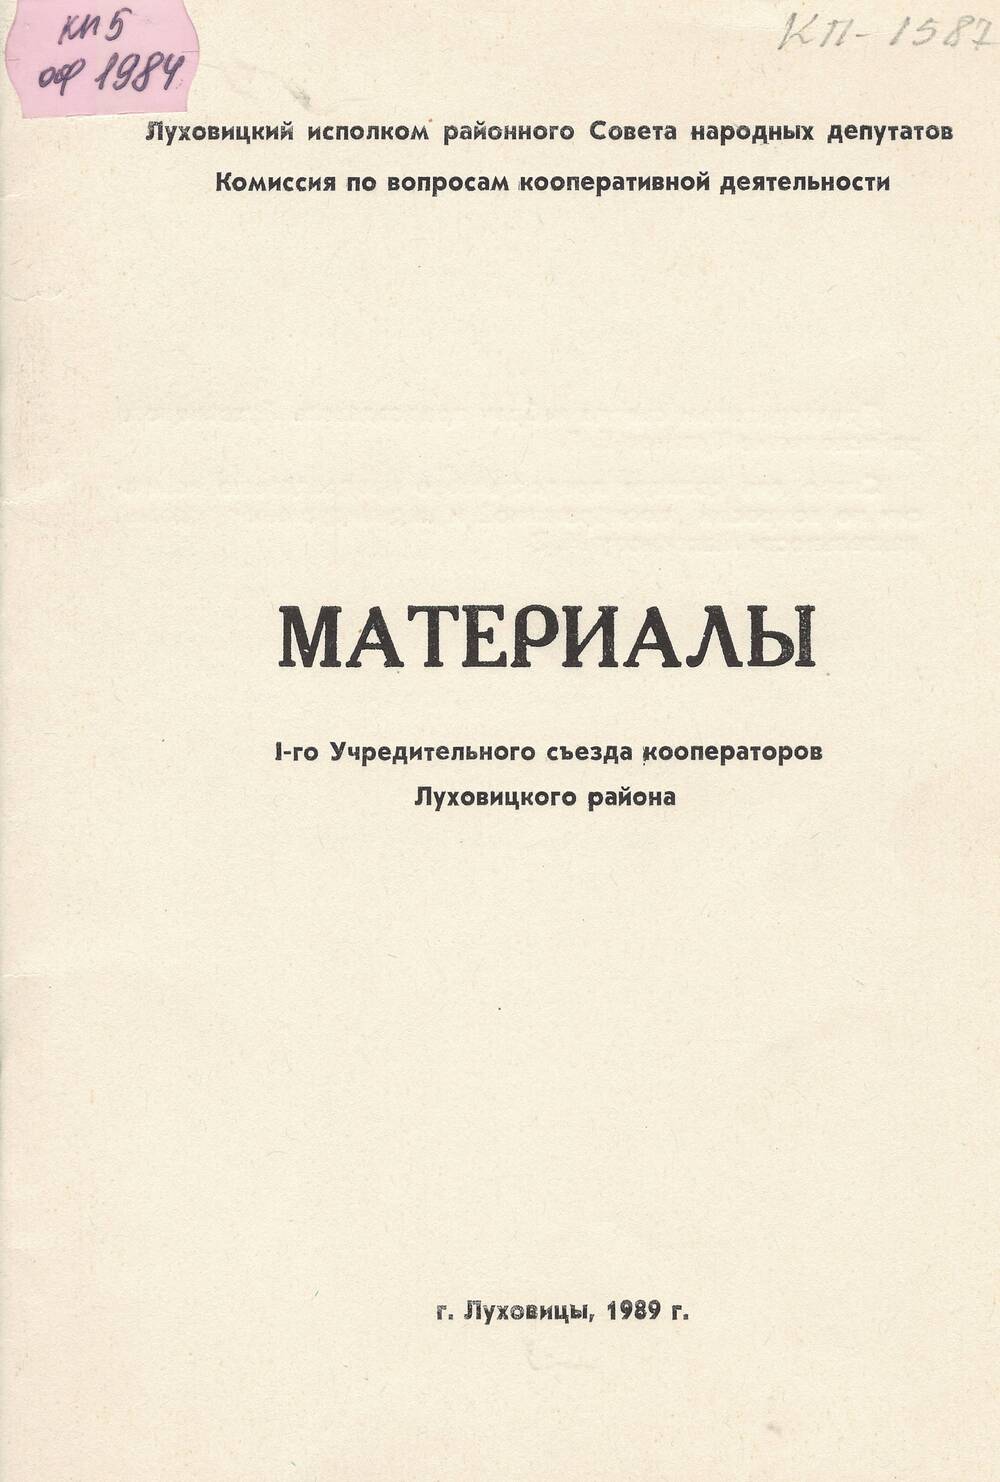 Материалы съезда кооператоров,1989 г.